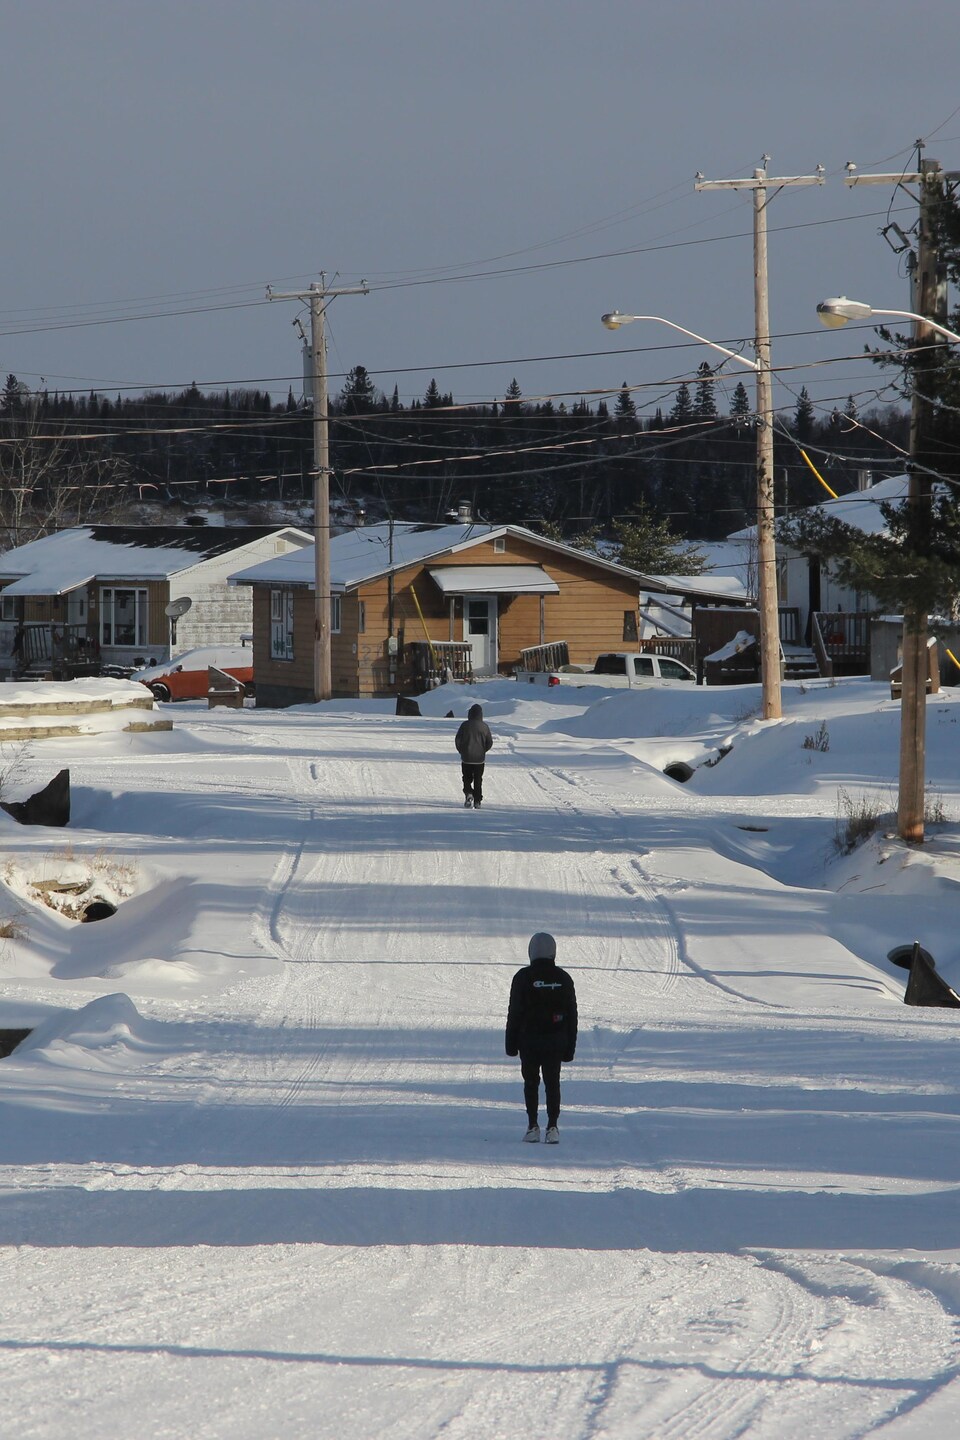 Vue d'ensemble de la communauté : des maisons, un chemin enneigé et deux personnes qui marchent sur le chemin. 